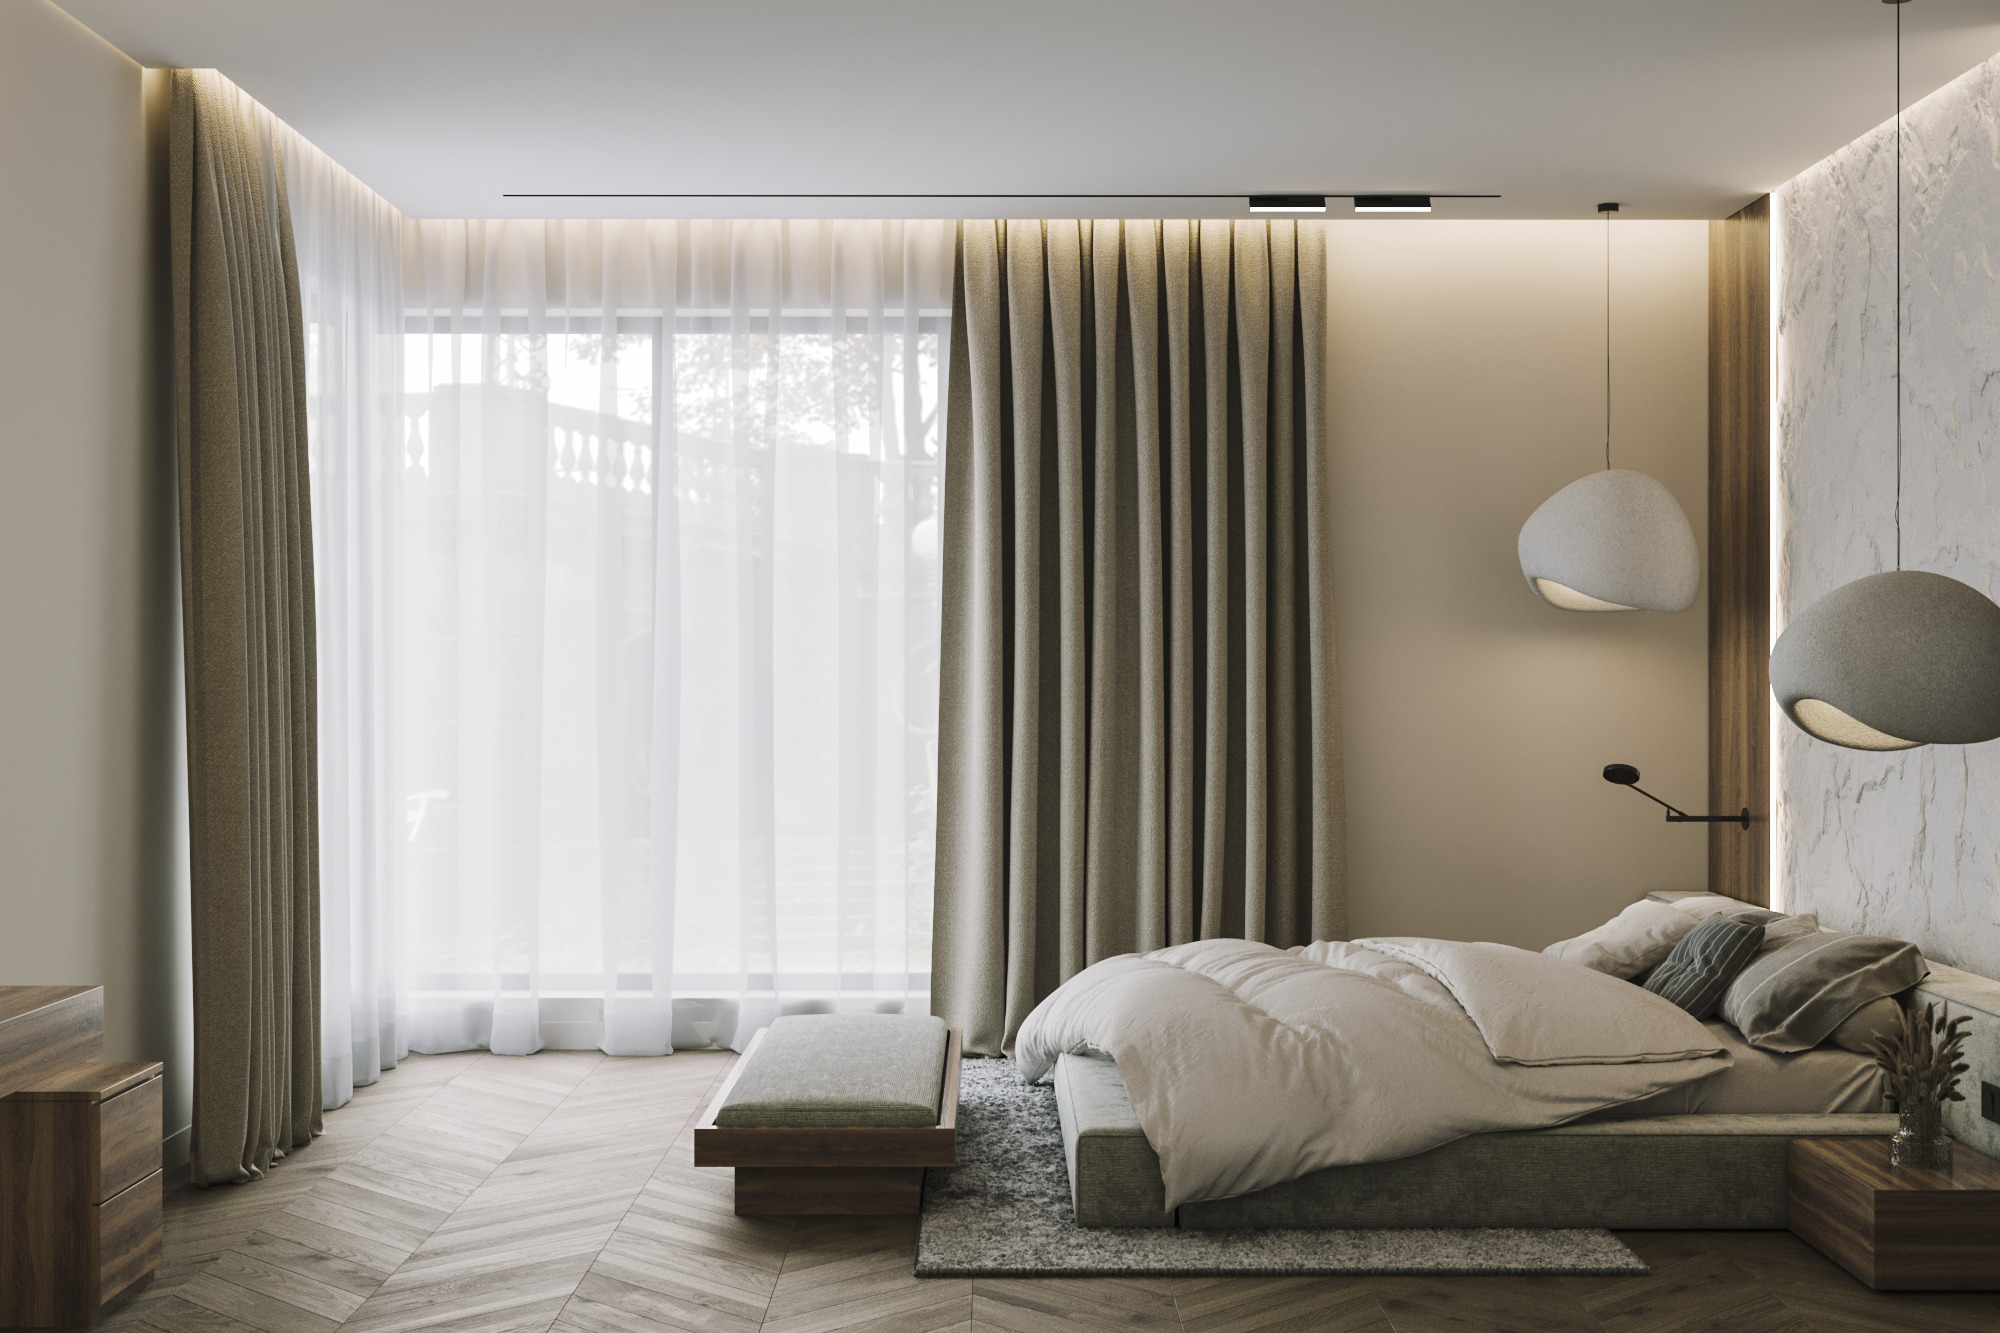 Интерьер спальни с угловым окном и рейками с подсветкой